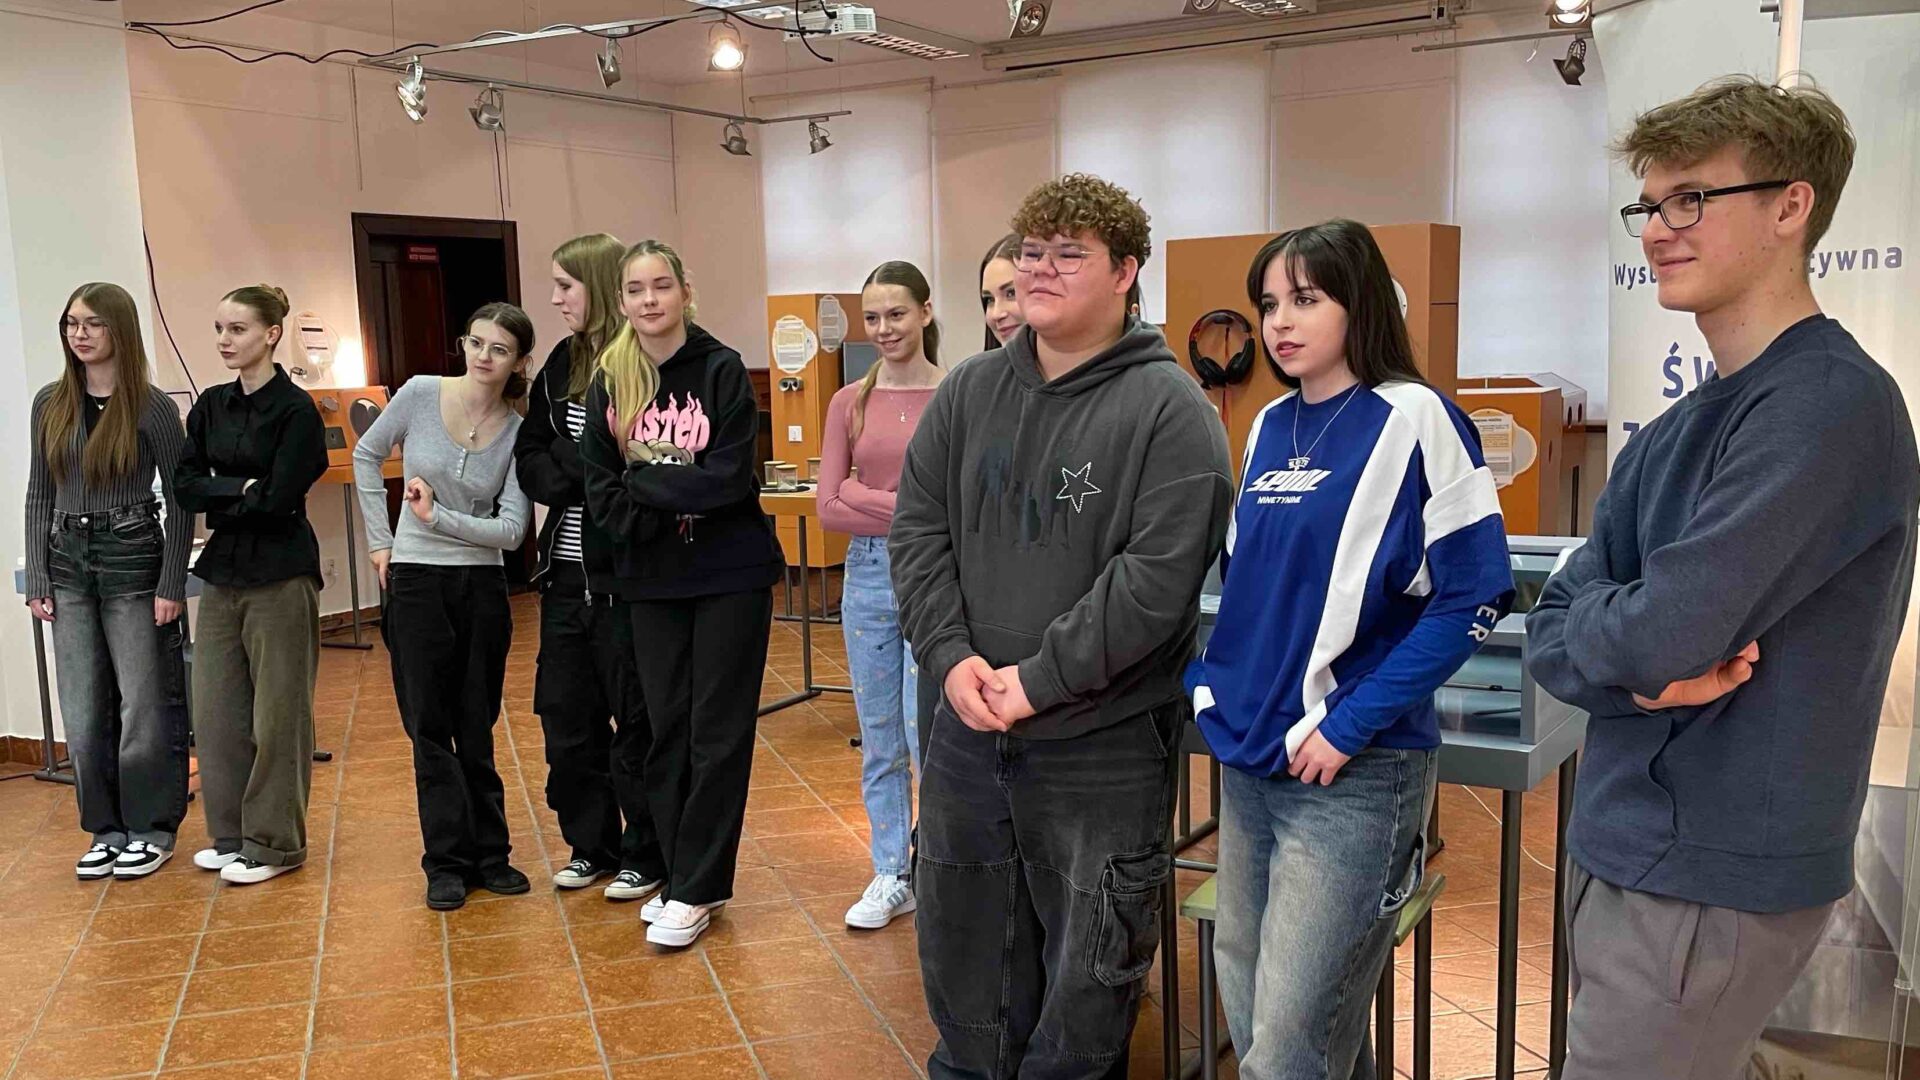 Na zdjęciu uczniowie w regionalnym muzeum. Przed grupa uczniów opiekun wystawy, który wyjaśnia uczniom istotę wystawy.